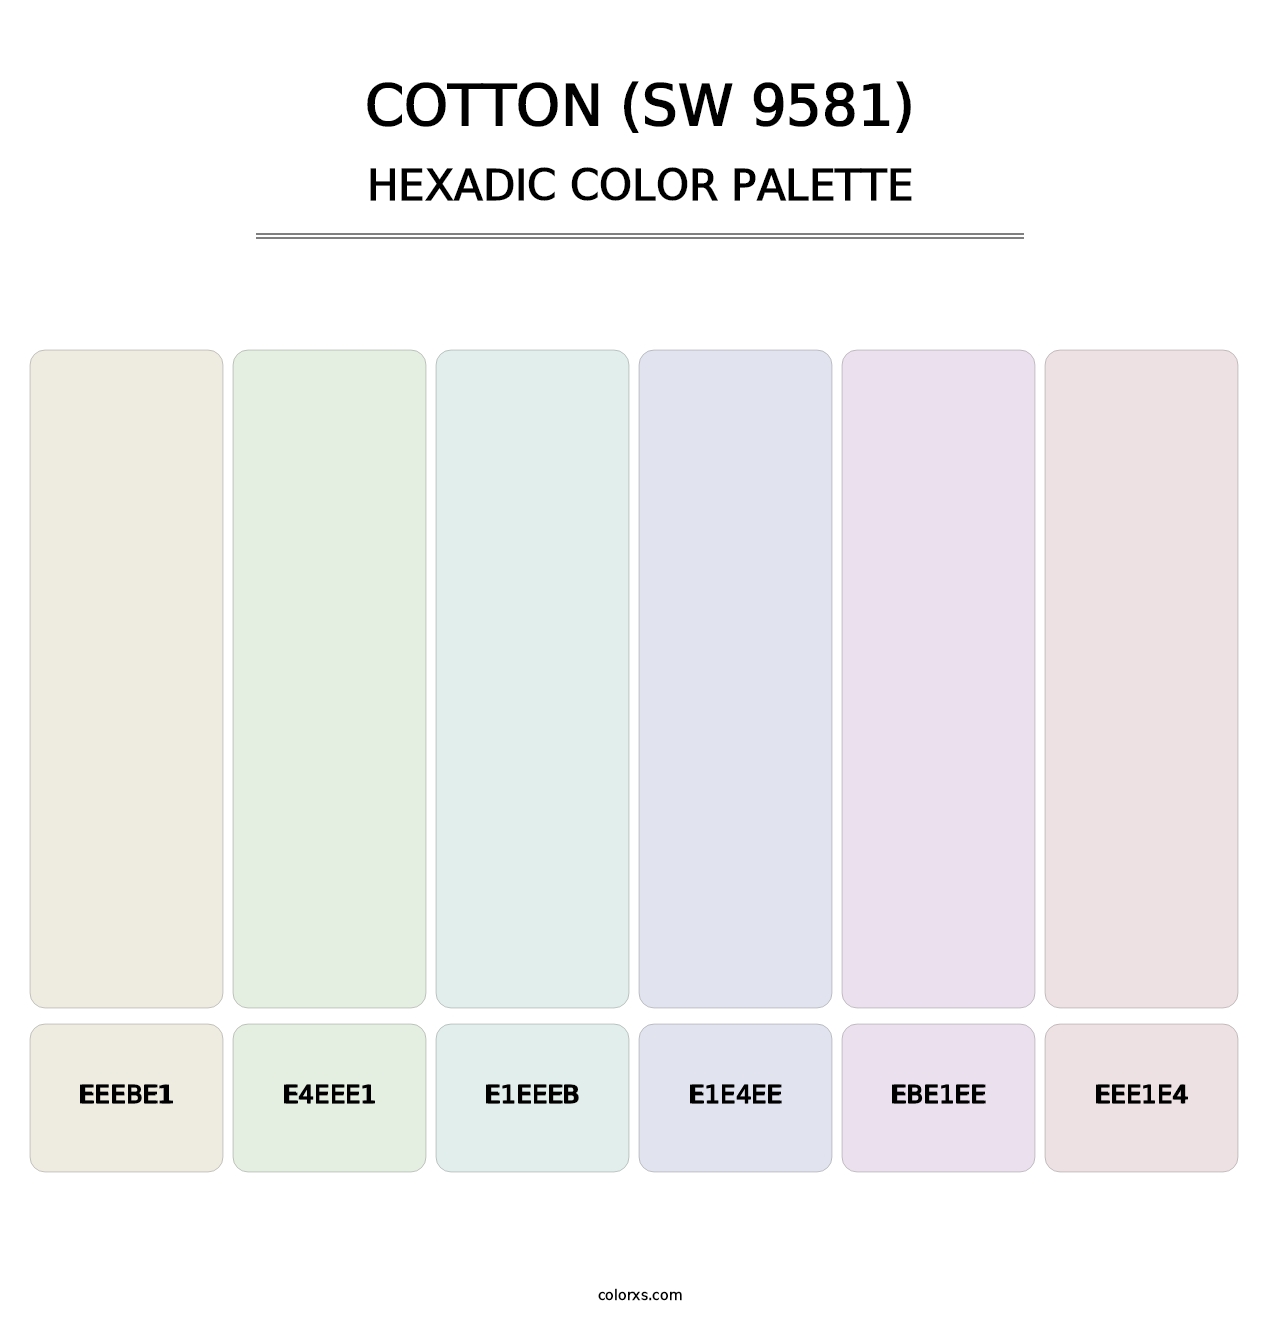 Cotton (SW 9581) - Hexadic Color Palette